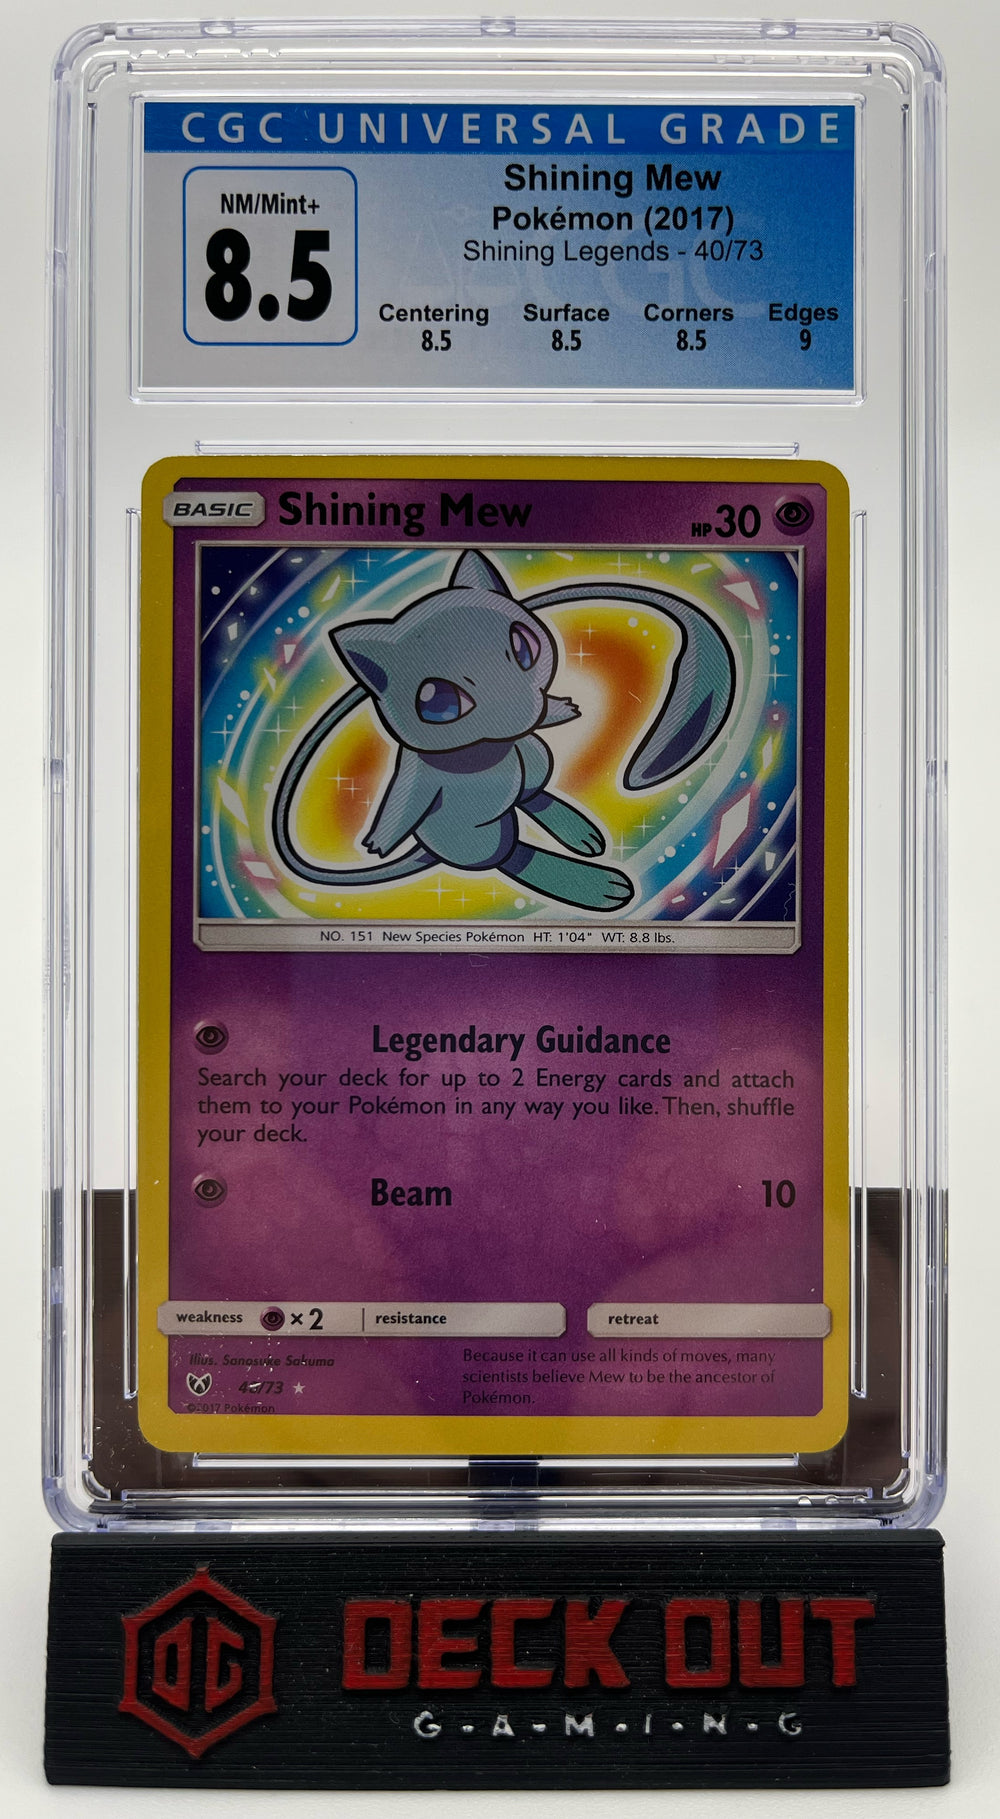 Shining Mew - Shining Legends - 40/73 - CGC 8.5 (8.5/8.5/8.5/9.0)